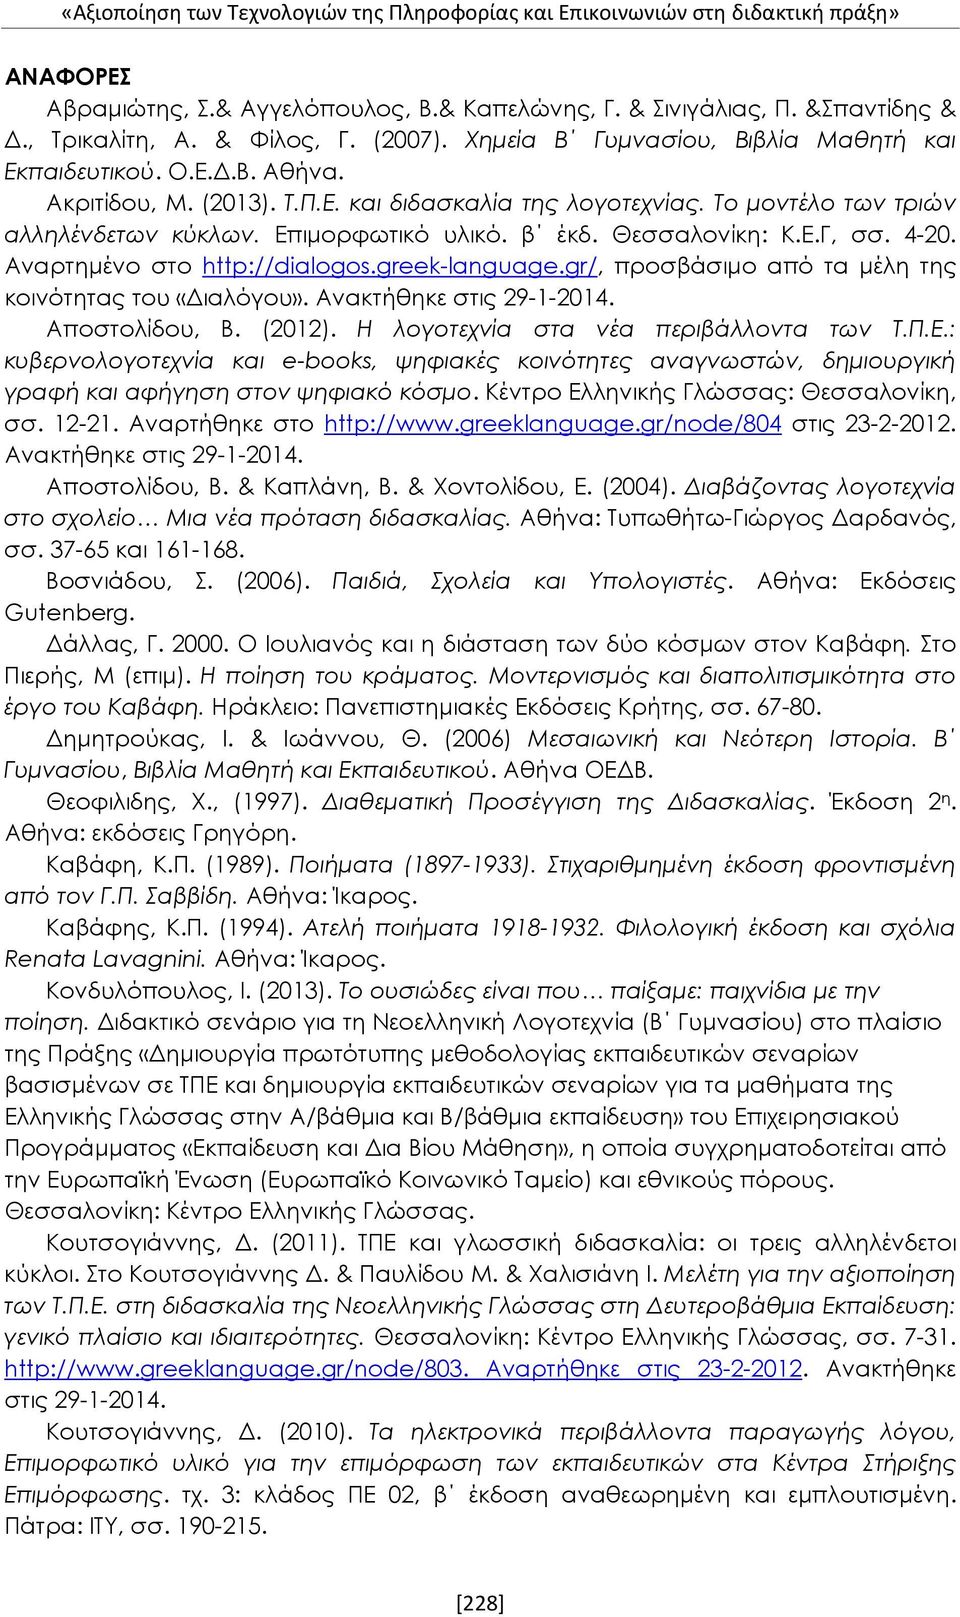 β έκδ. Θεσσαλονίκη: Κ.Ε.Γ, σσ. 4-20. Αναρτημένο στο http://dialogos.greek-language.gr/, προσβάσιμο από τα μέλη της κοινότητας του «Διαλόγου». Ανακτήθηκε στις 29-1-2014. Αποστολίδου, Β. (2012).